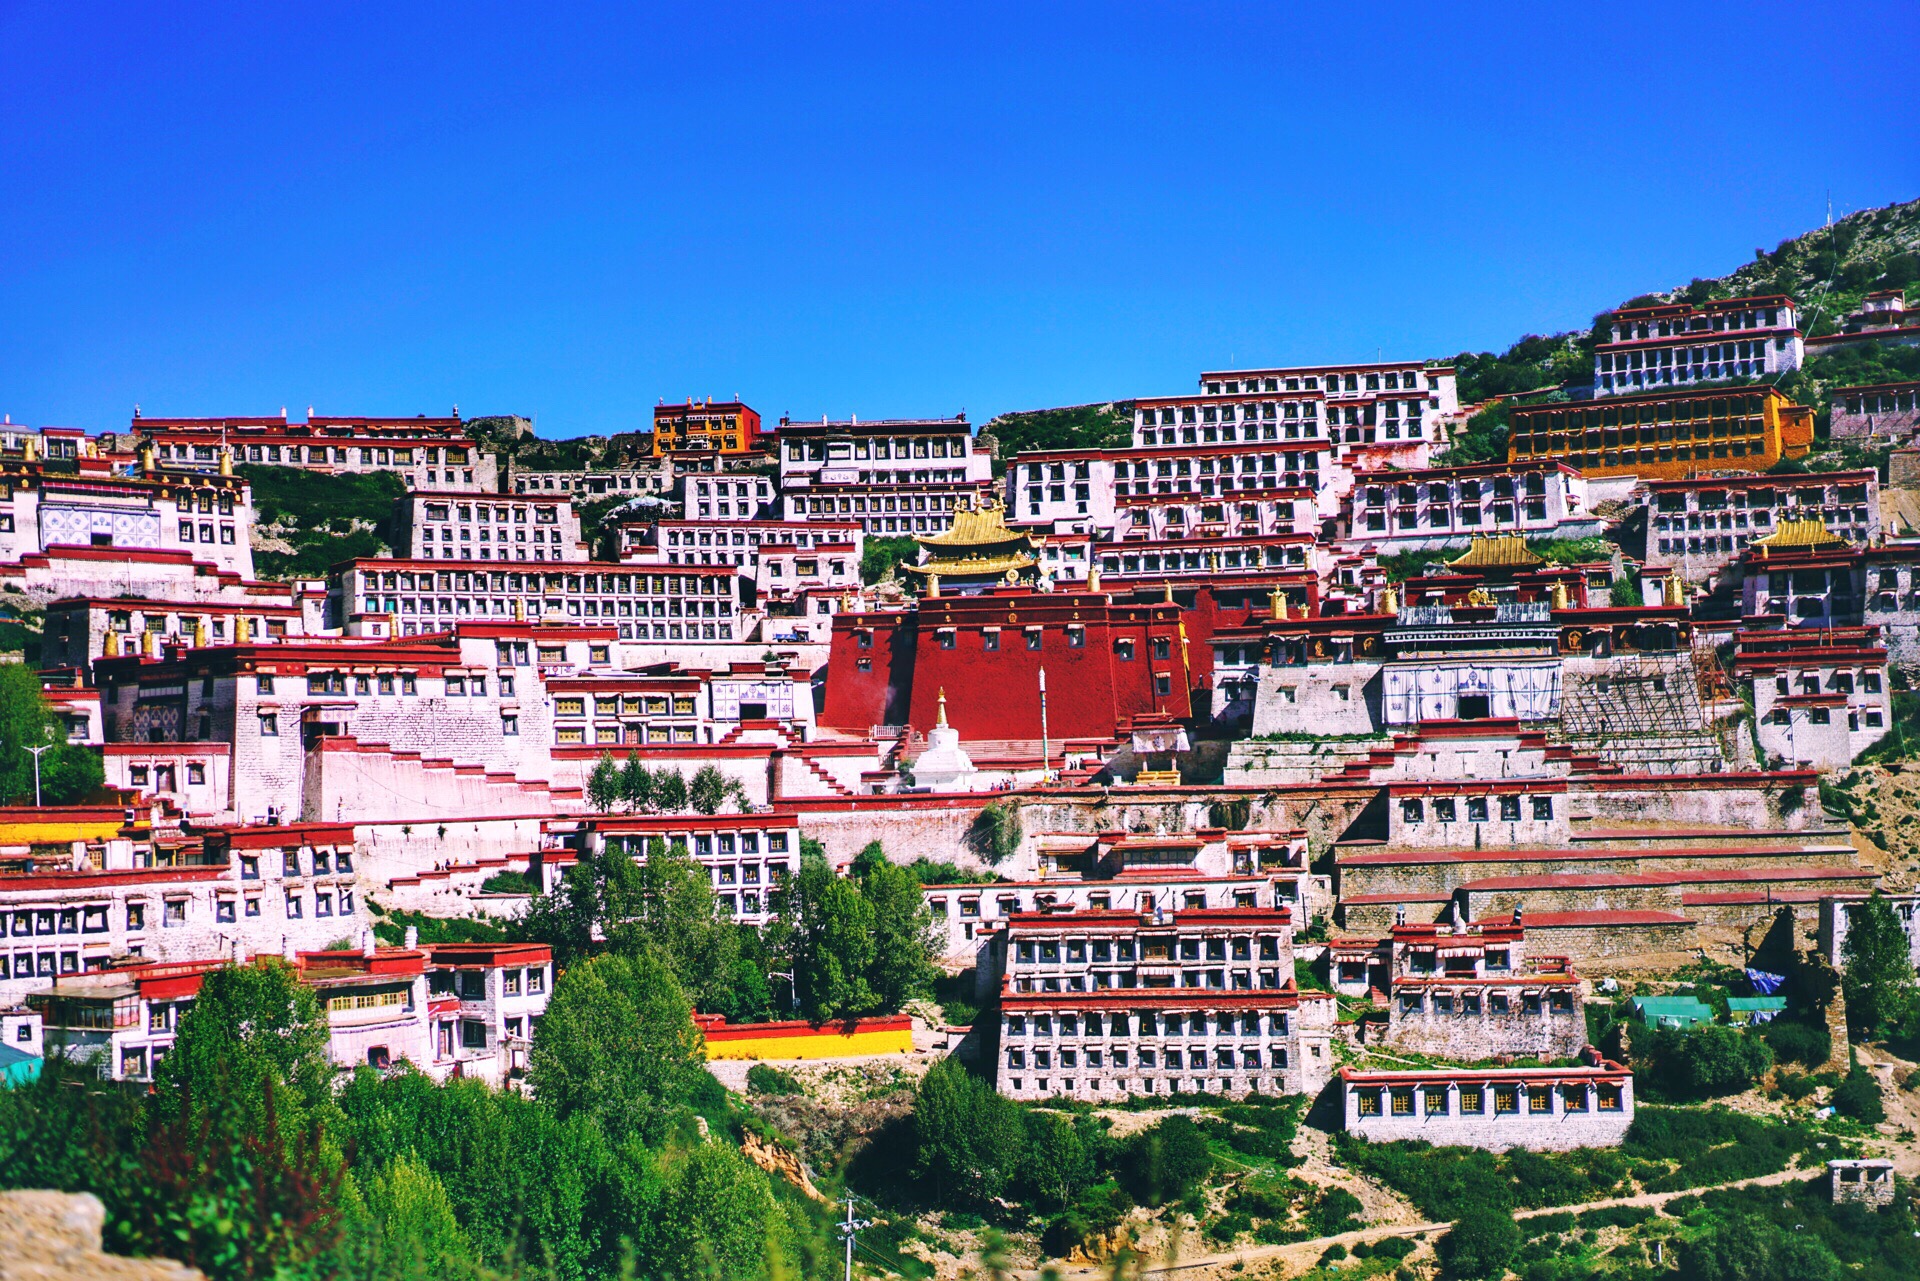 Tibet Ganden Monastery